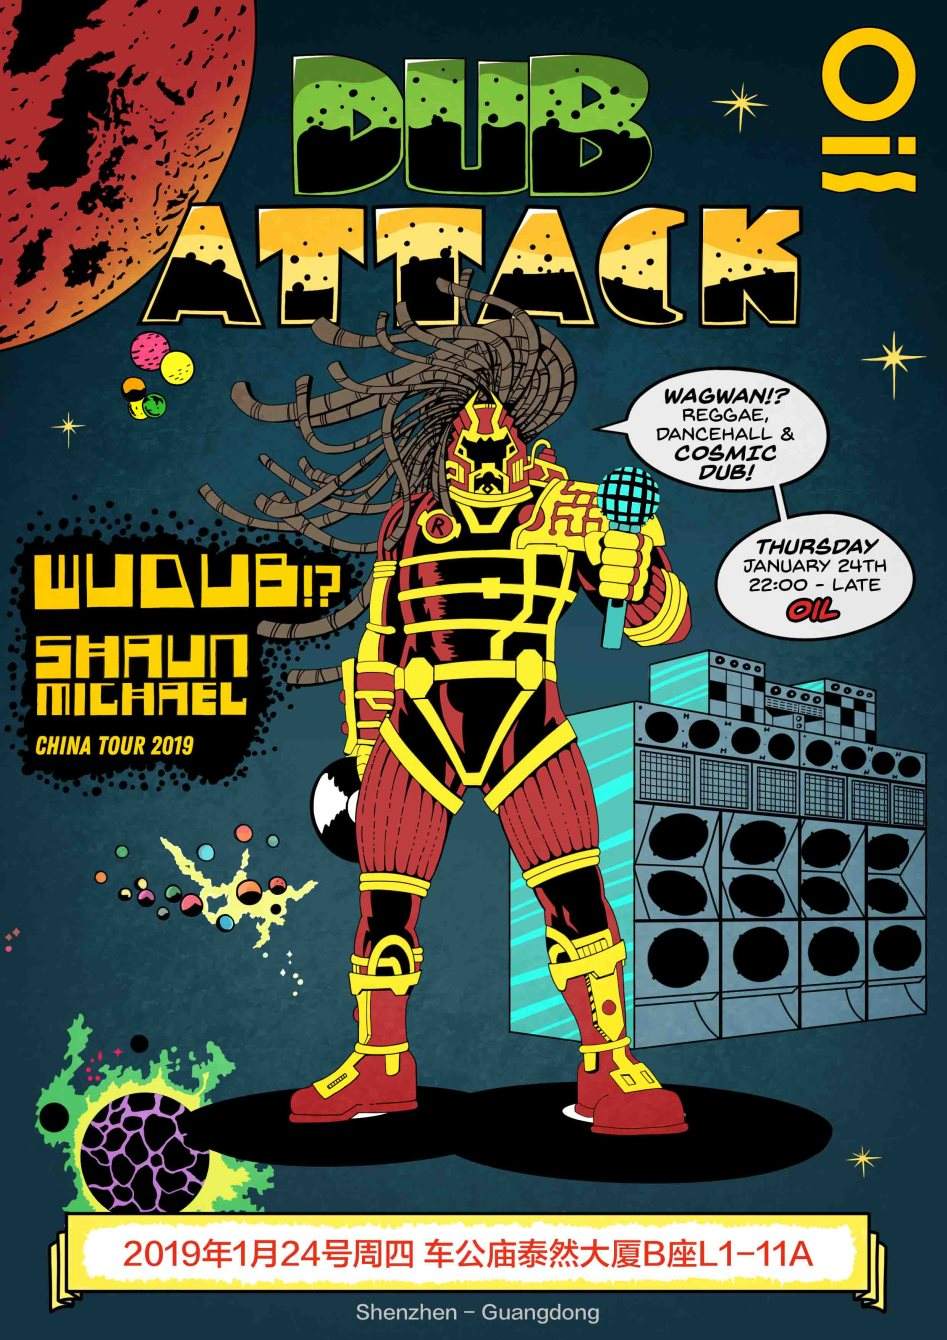 Dub Attack Pres. Wudub - フライヤー表